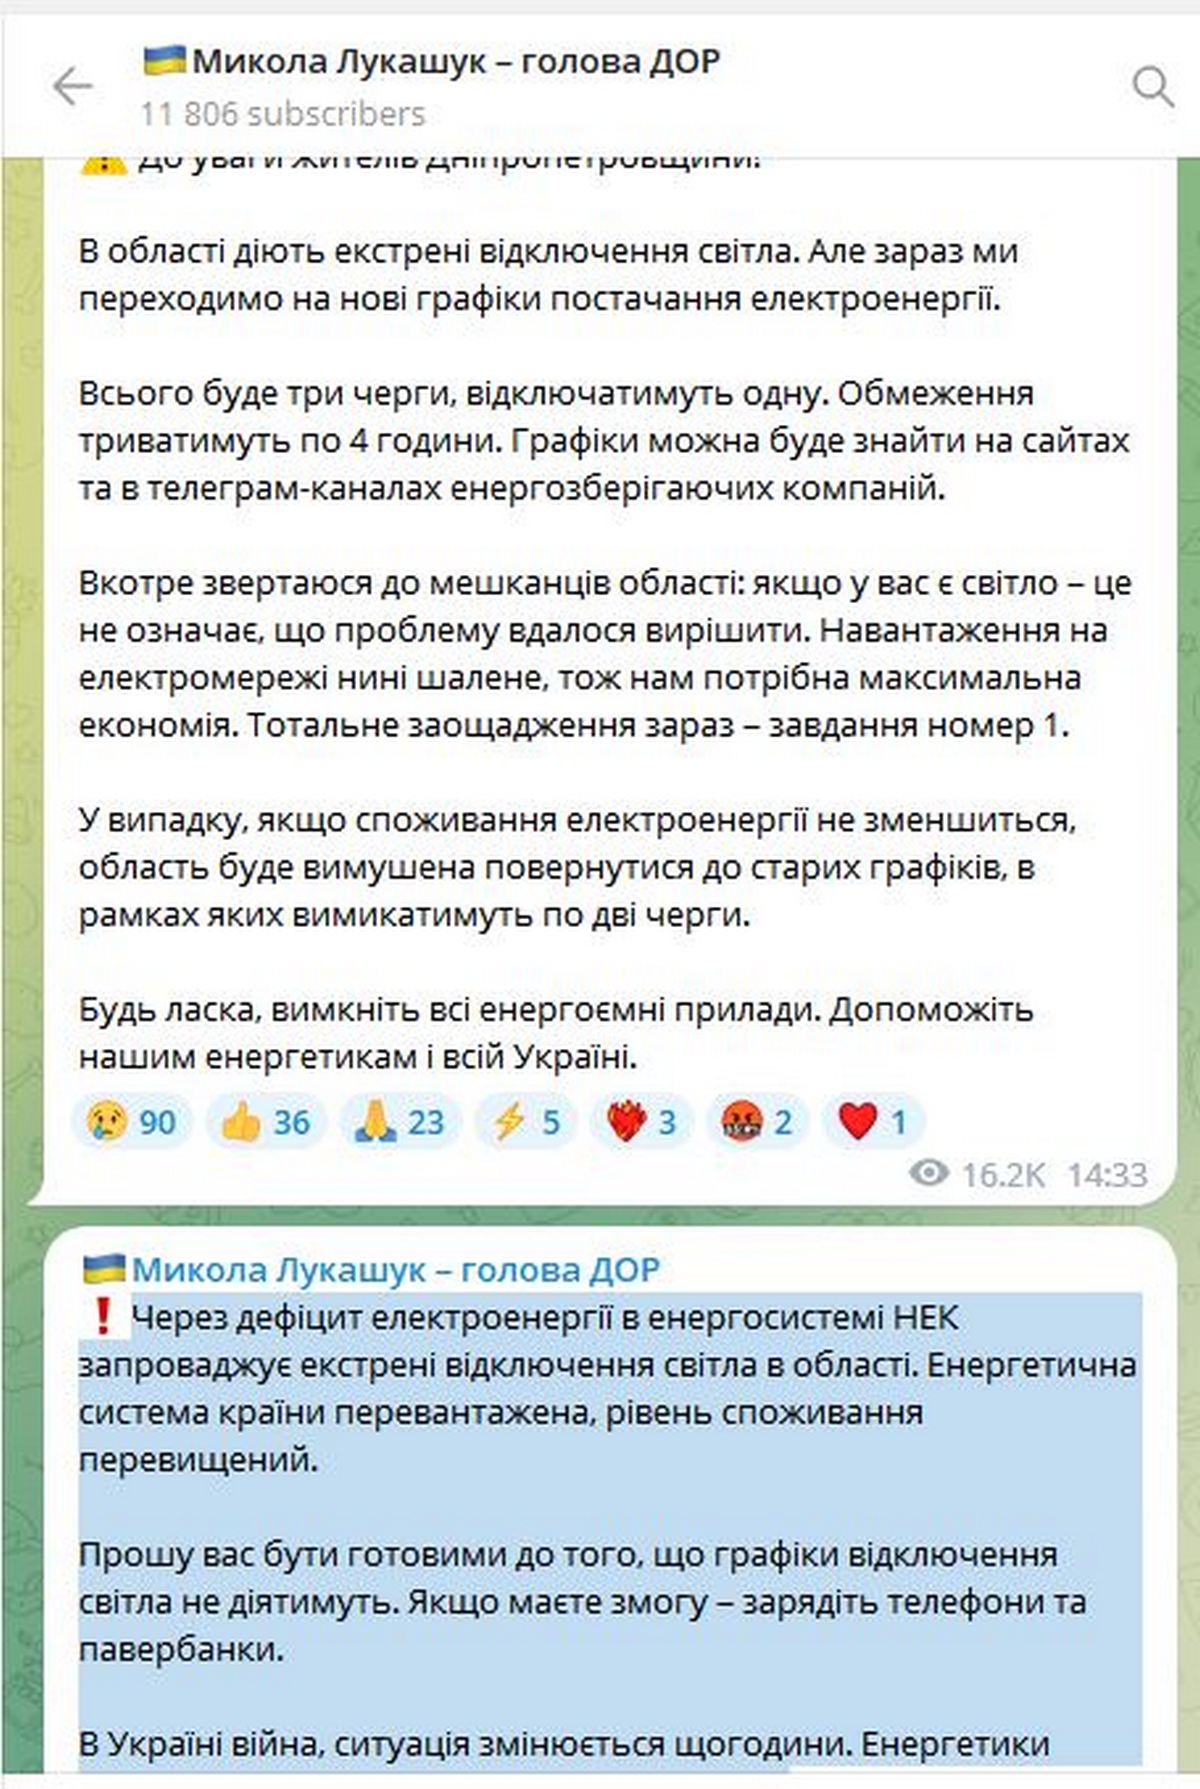 Зарядіть телефони й павербанки: на Дніпропетровщині повертають екстрені вимкнення світла